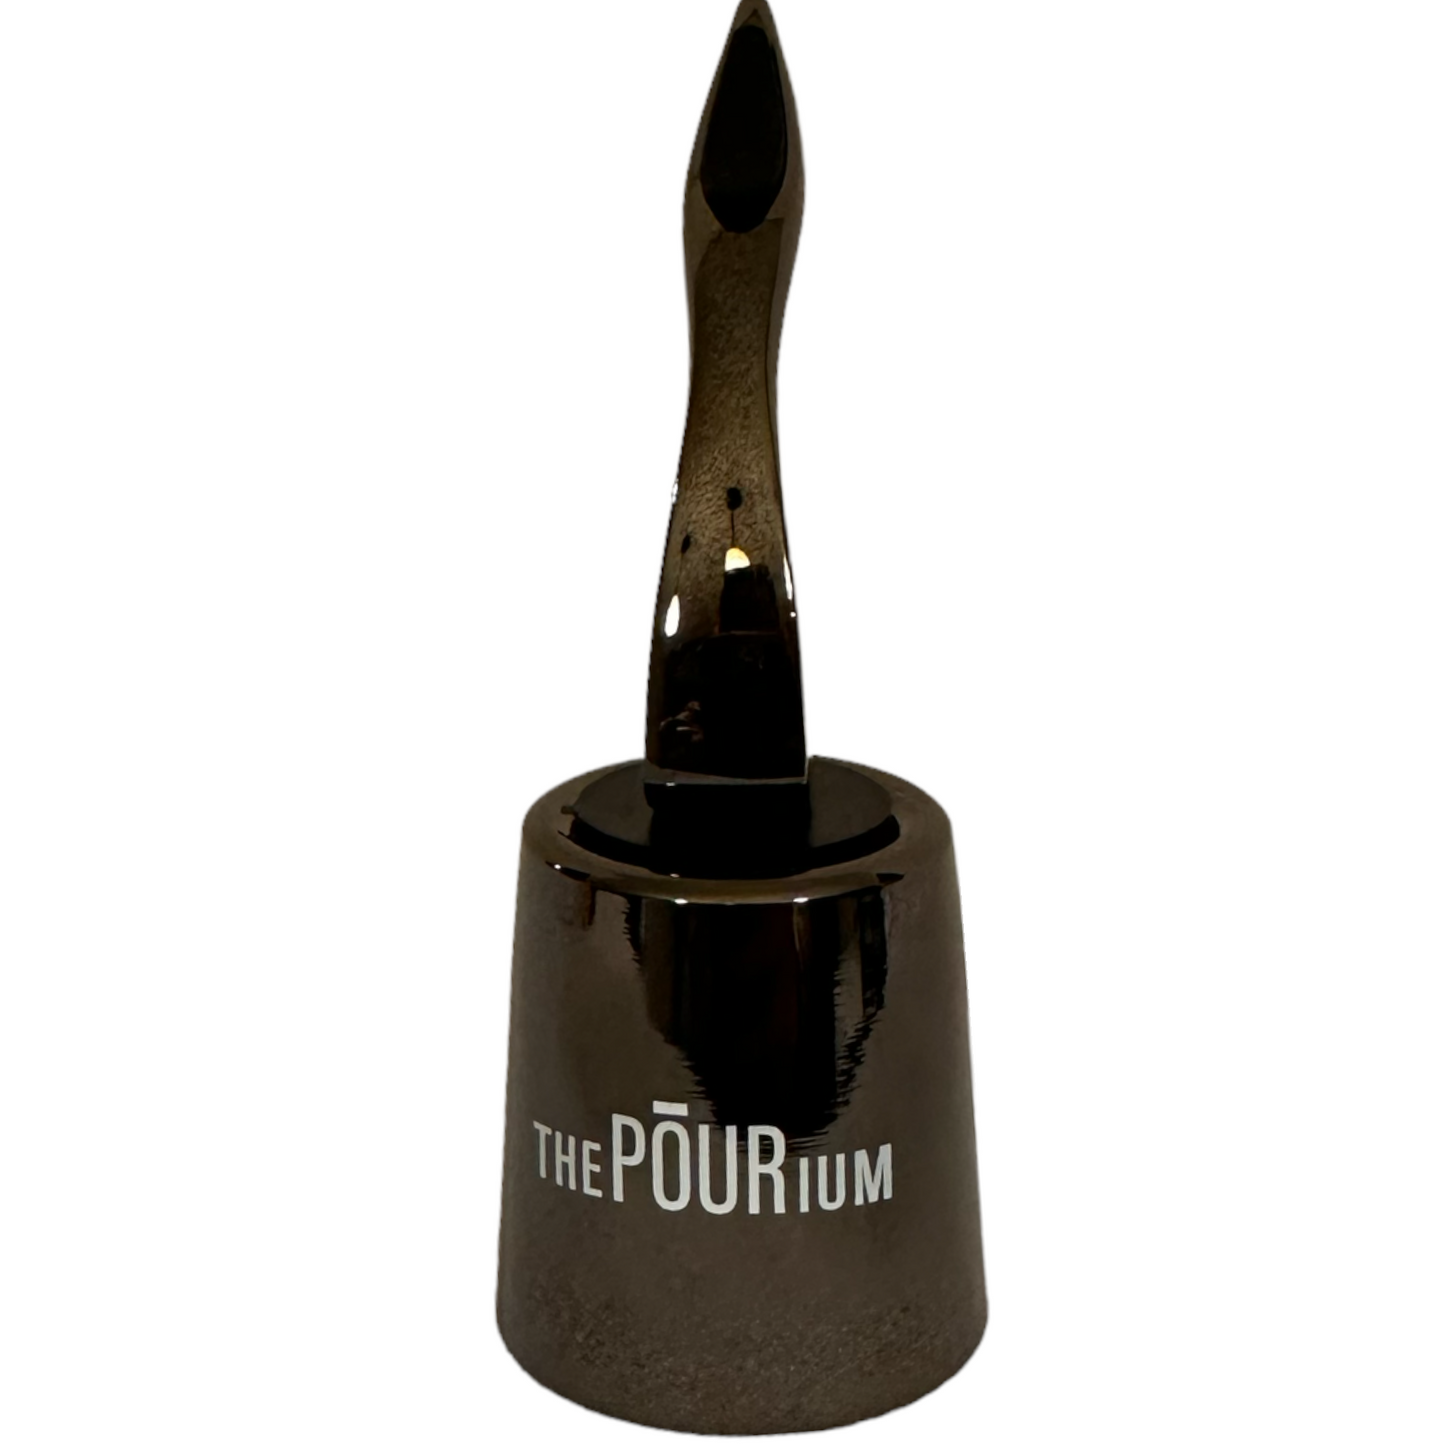 The Pourium Champagne Stopper